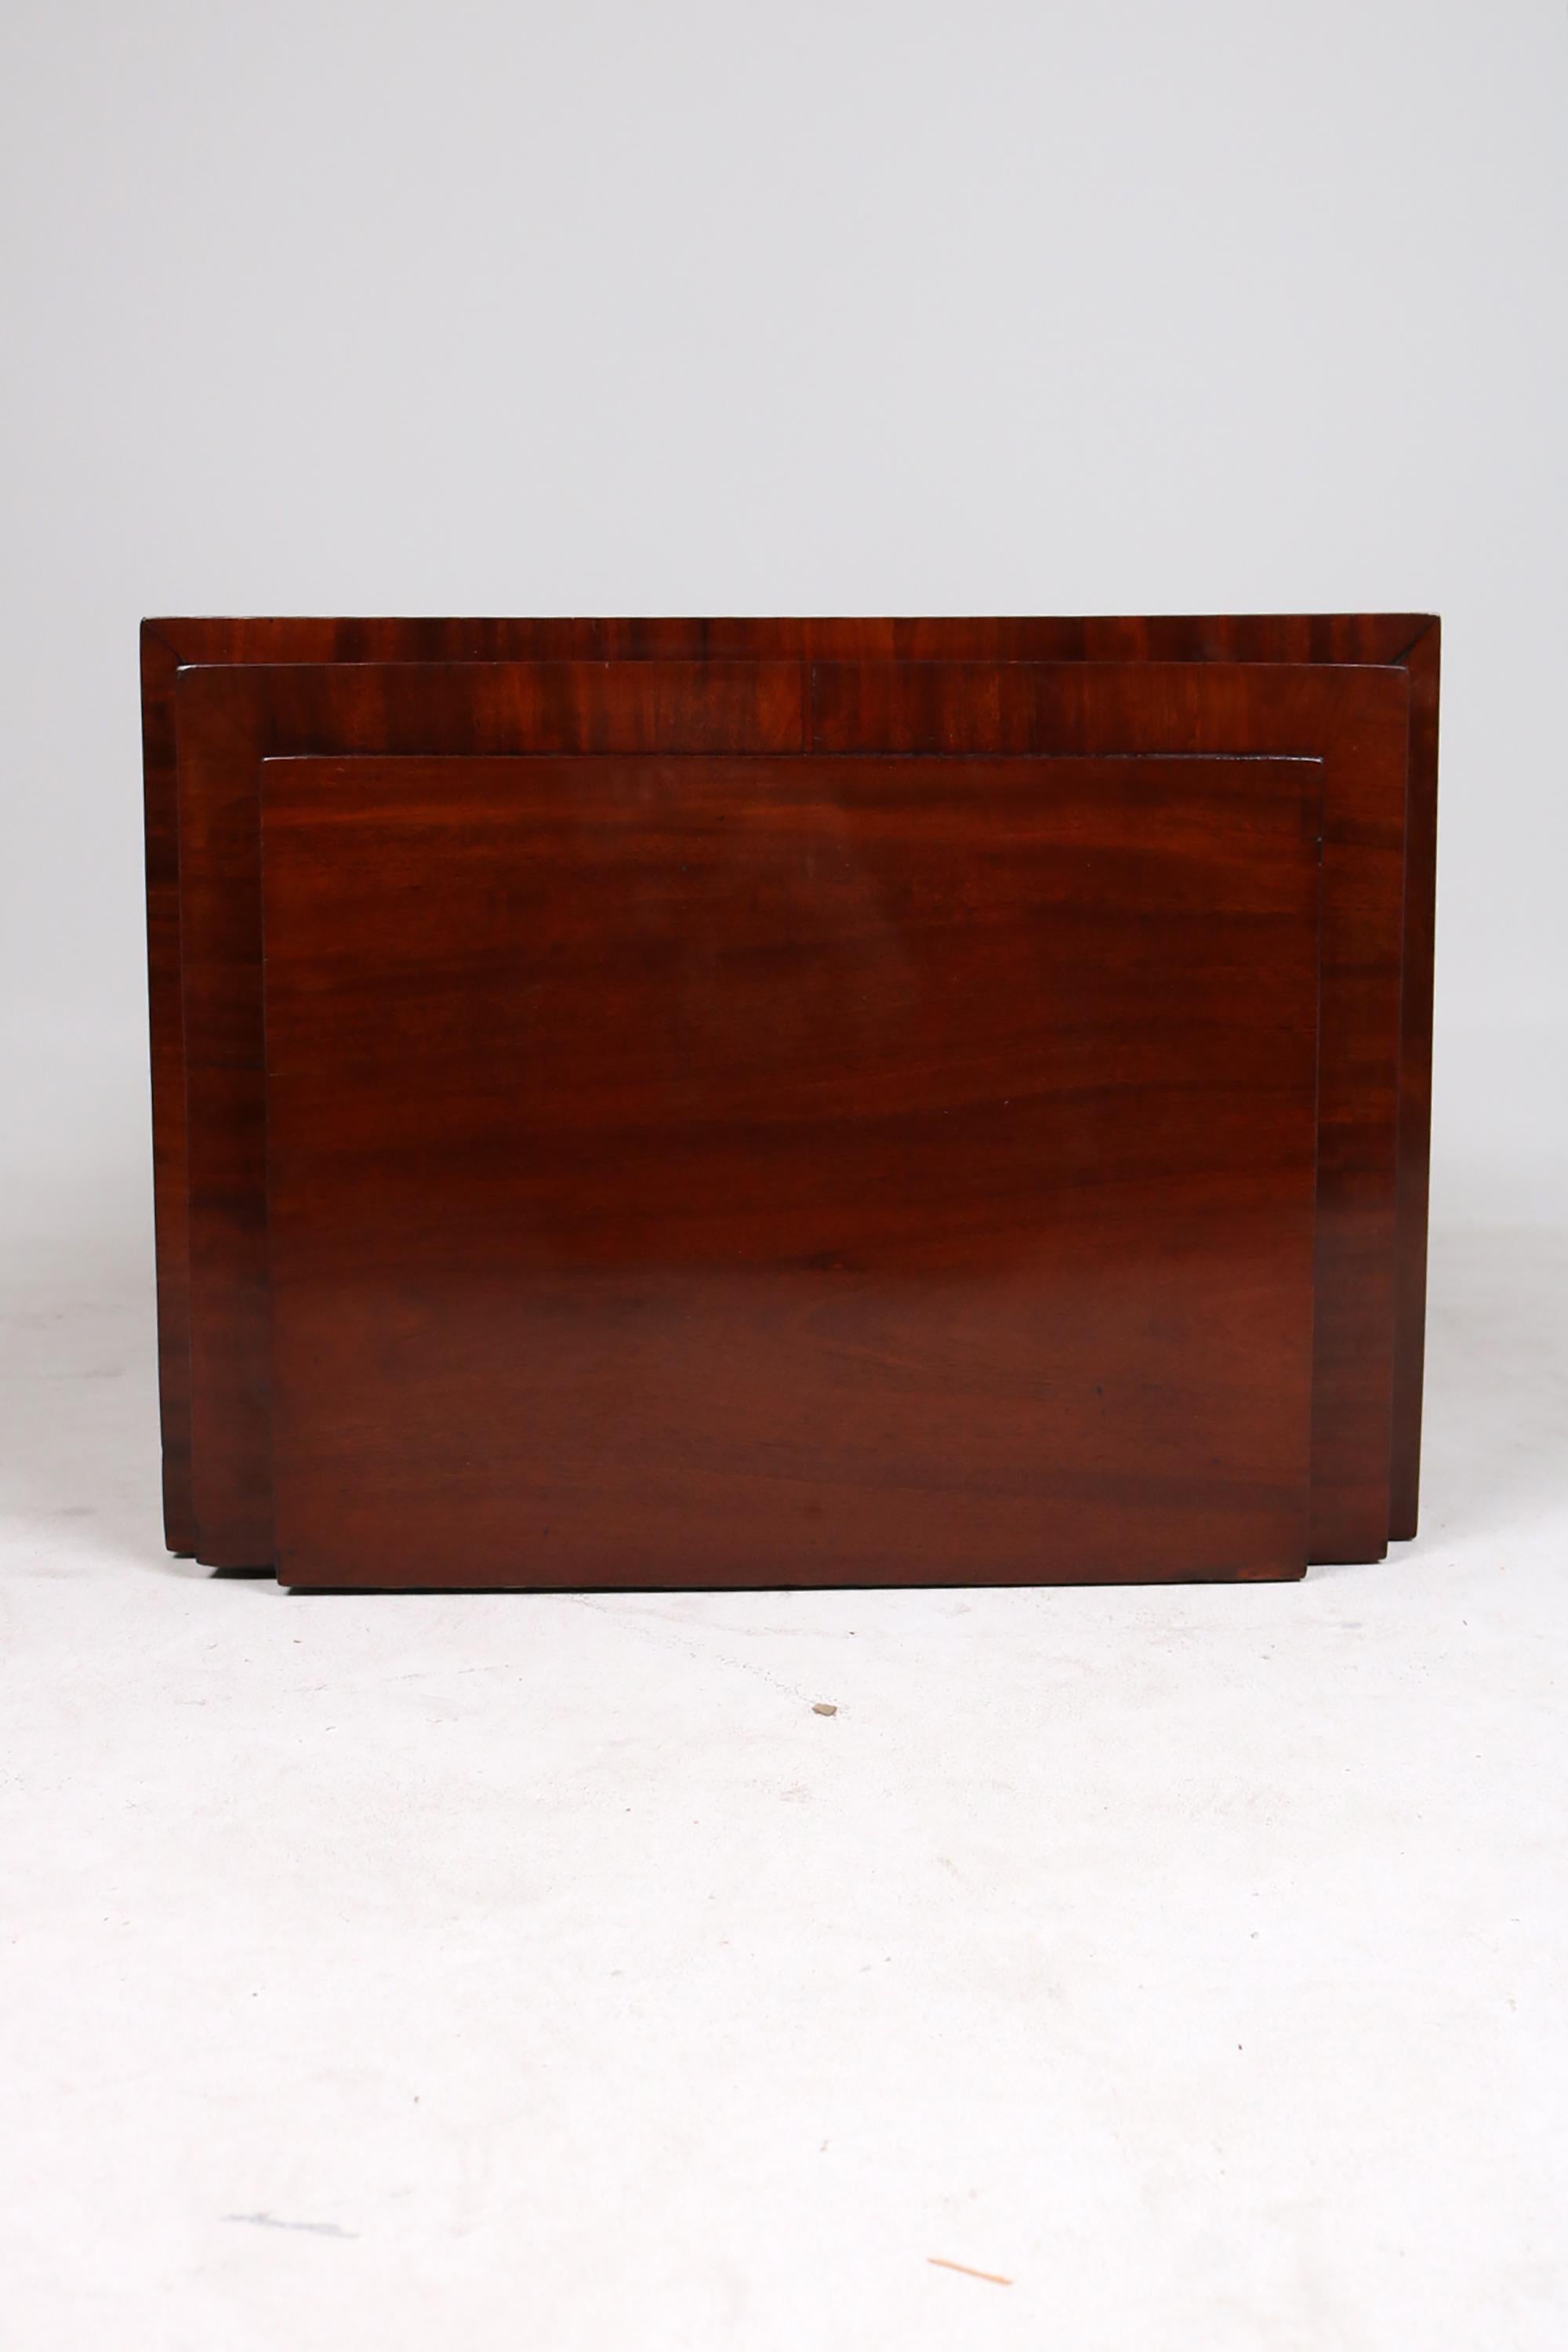 Cabinet Biedermeier, corps de meuble en bois de pin, plaqué d'acajou pyramidal. Un meuble classique, aux lignes droites, équipé d'une porte et d'un seul tiroir.

Ce meuble est en très bon état et prêt à l'emploi.
L'armoire a été rénovée par un